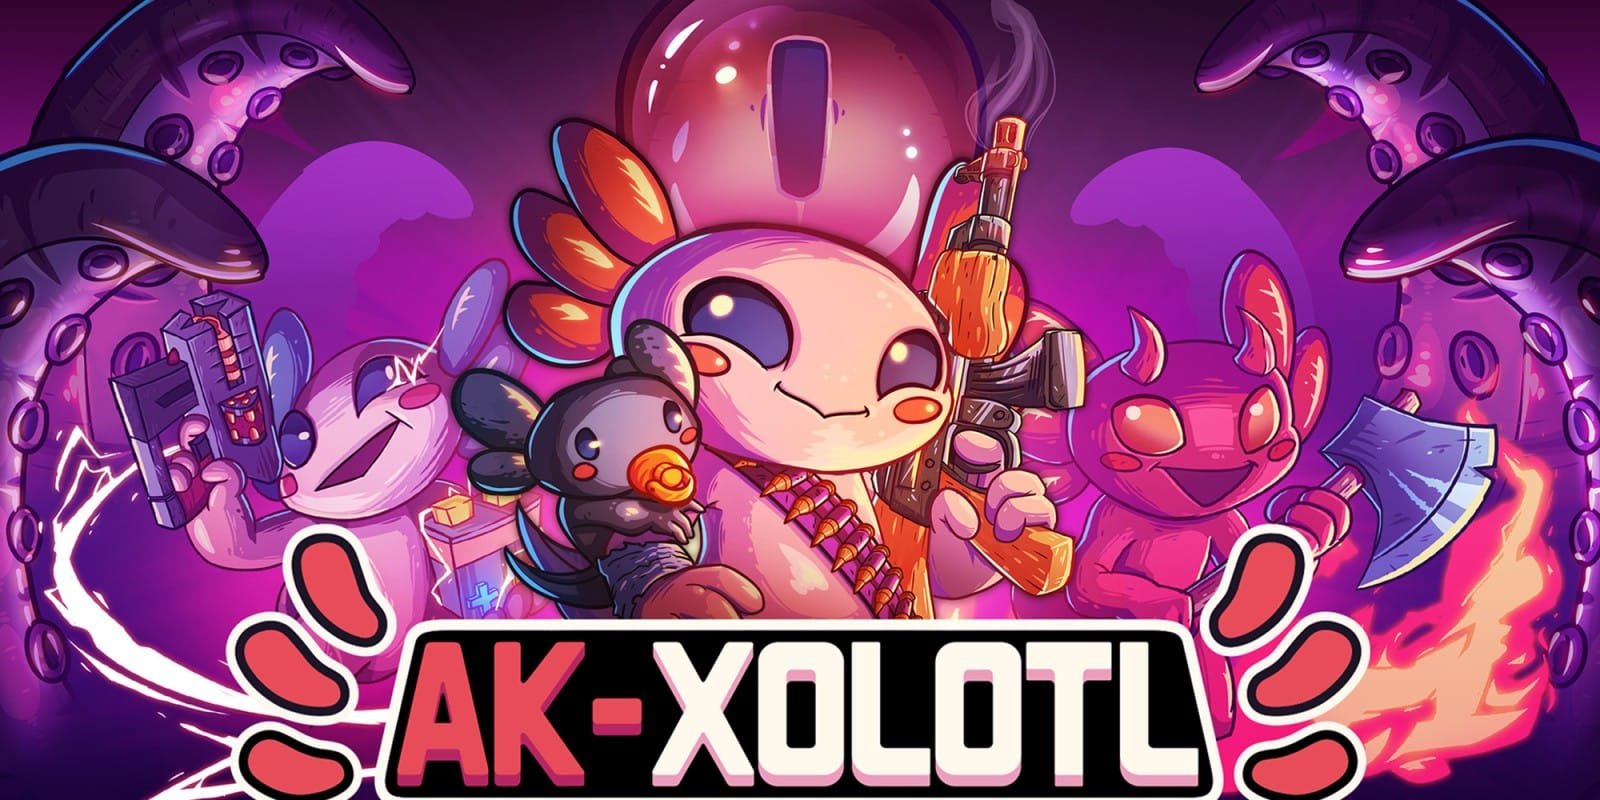 Ak-xolotl art featuring a gun-wielding axolotl